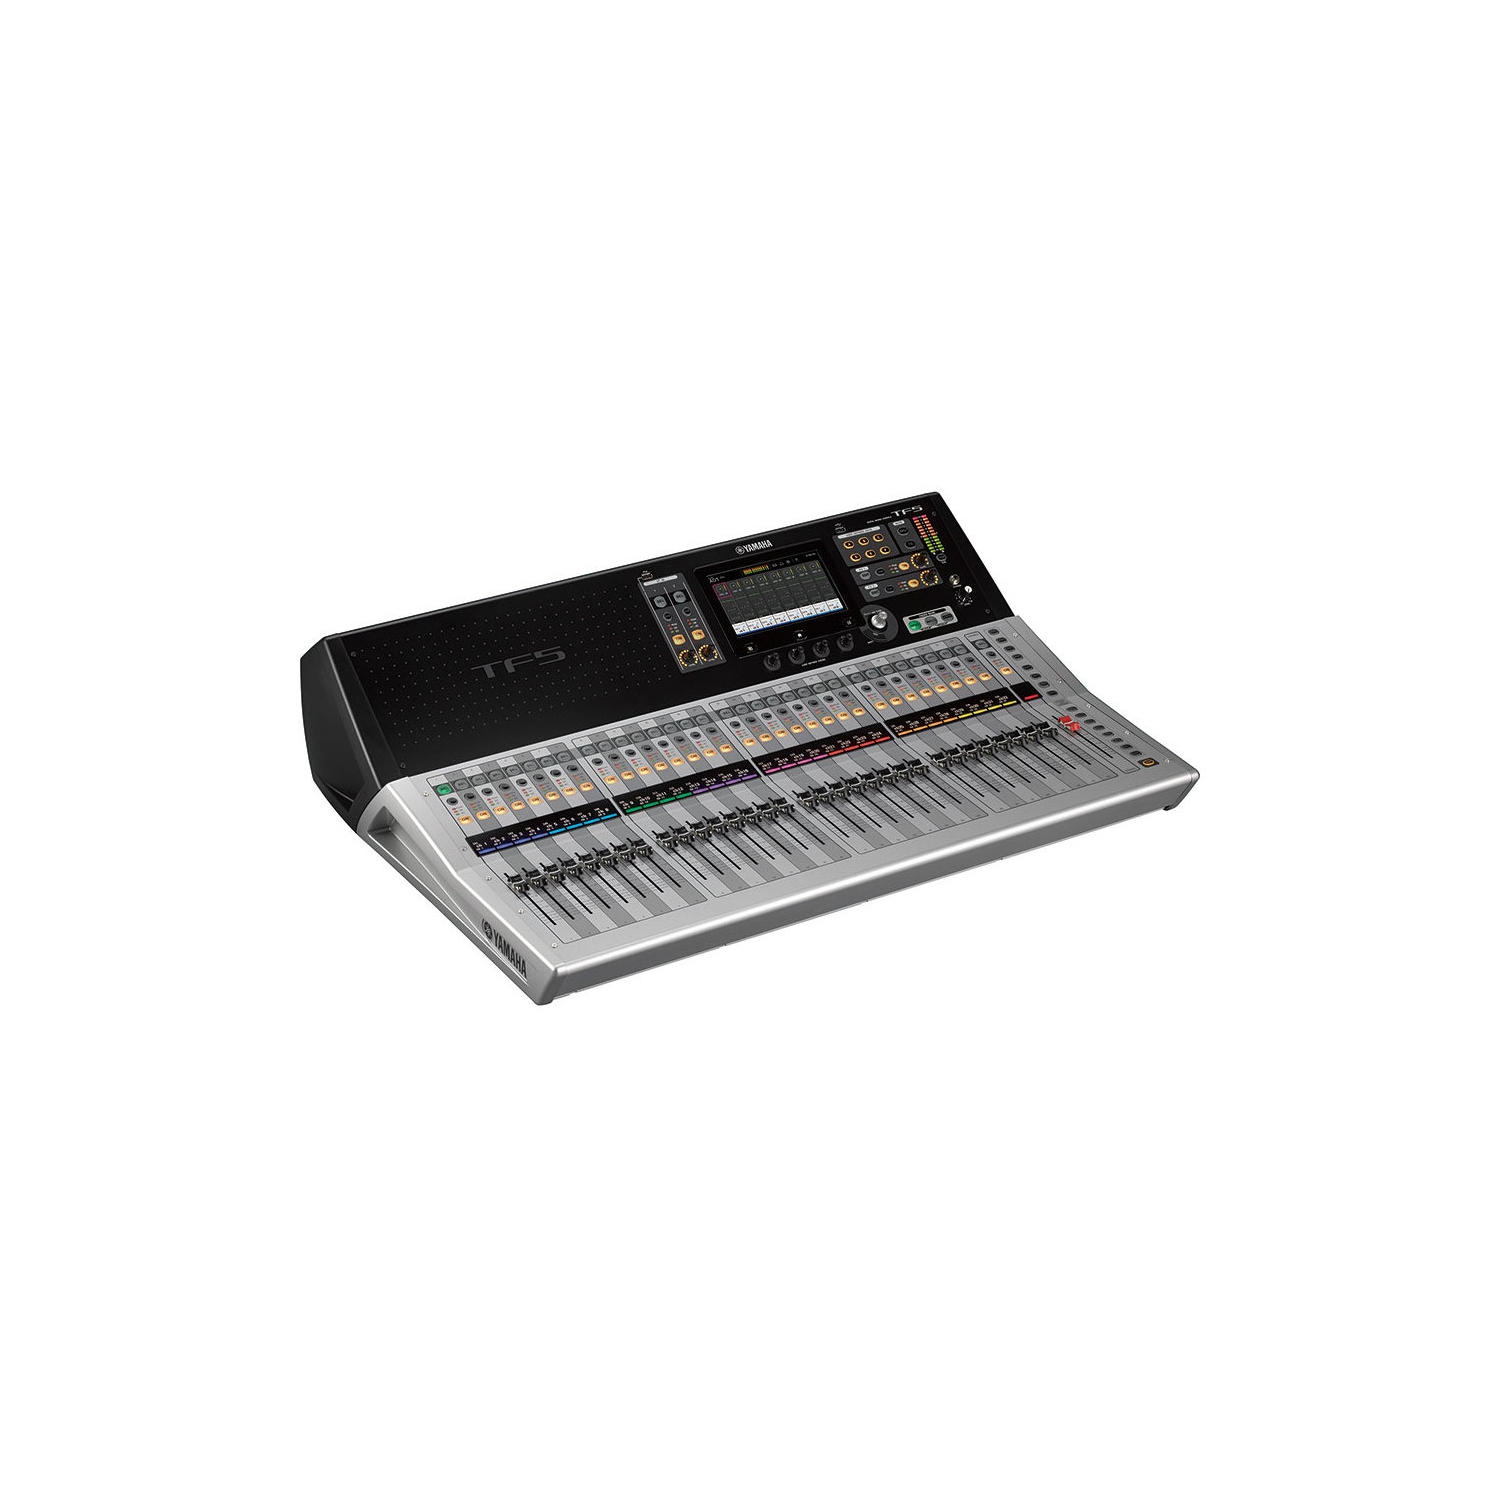 Consoles de mixage - Audio professionnel - Produits - Yamaha - Canada -  Français